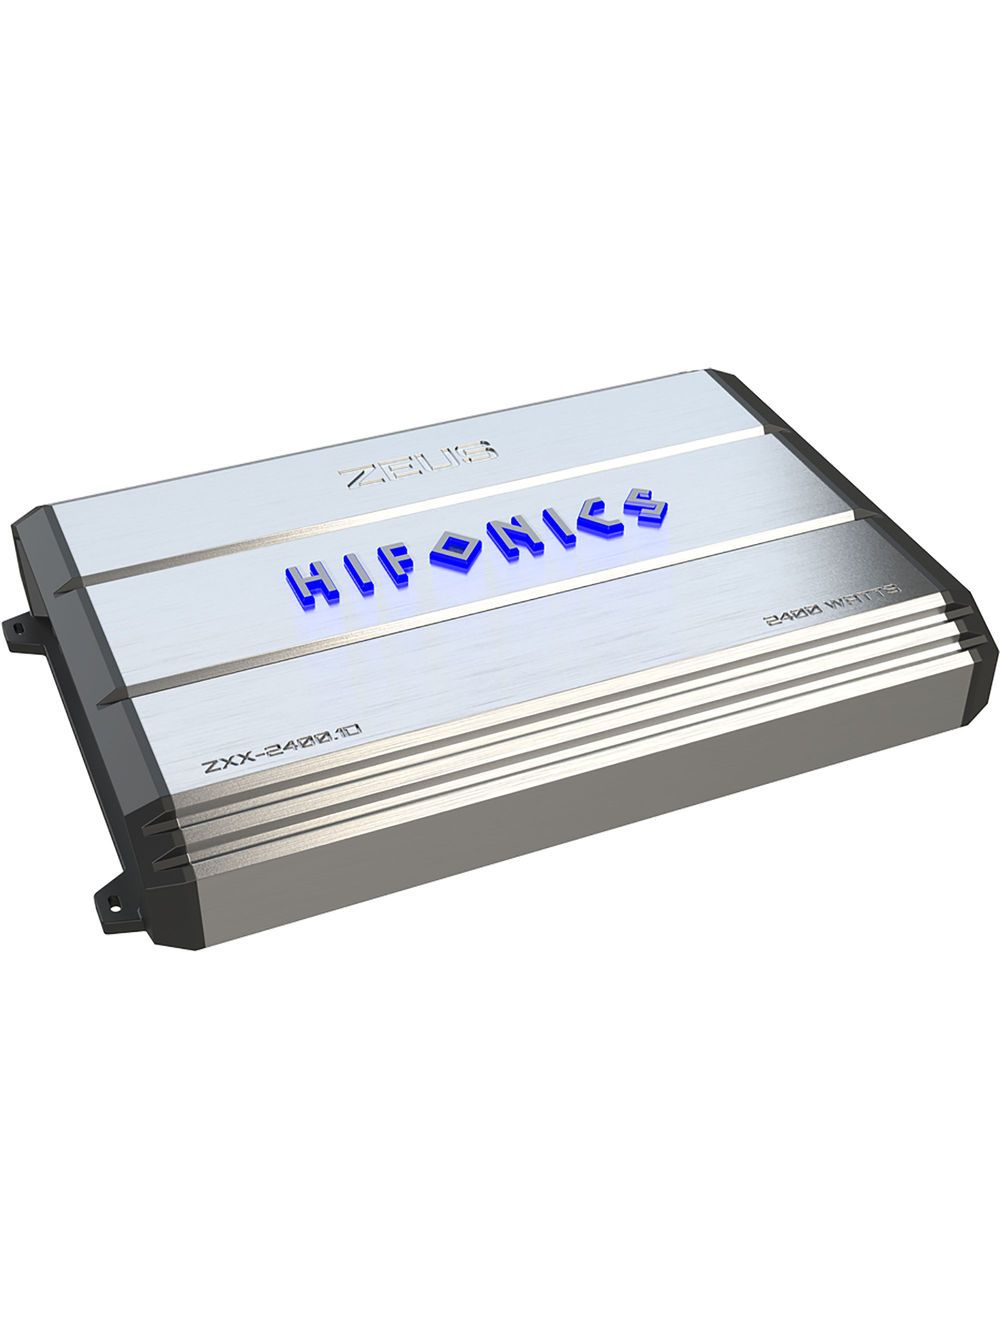 Hifonics ZXX-2400.1D Zeus Max Mono Amplifier